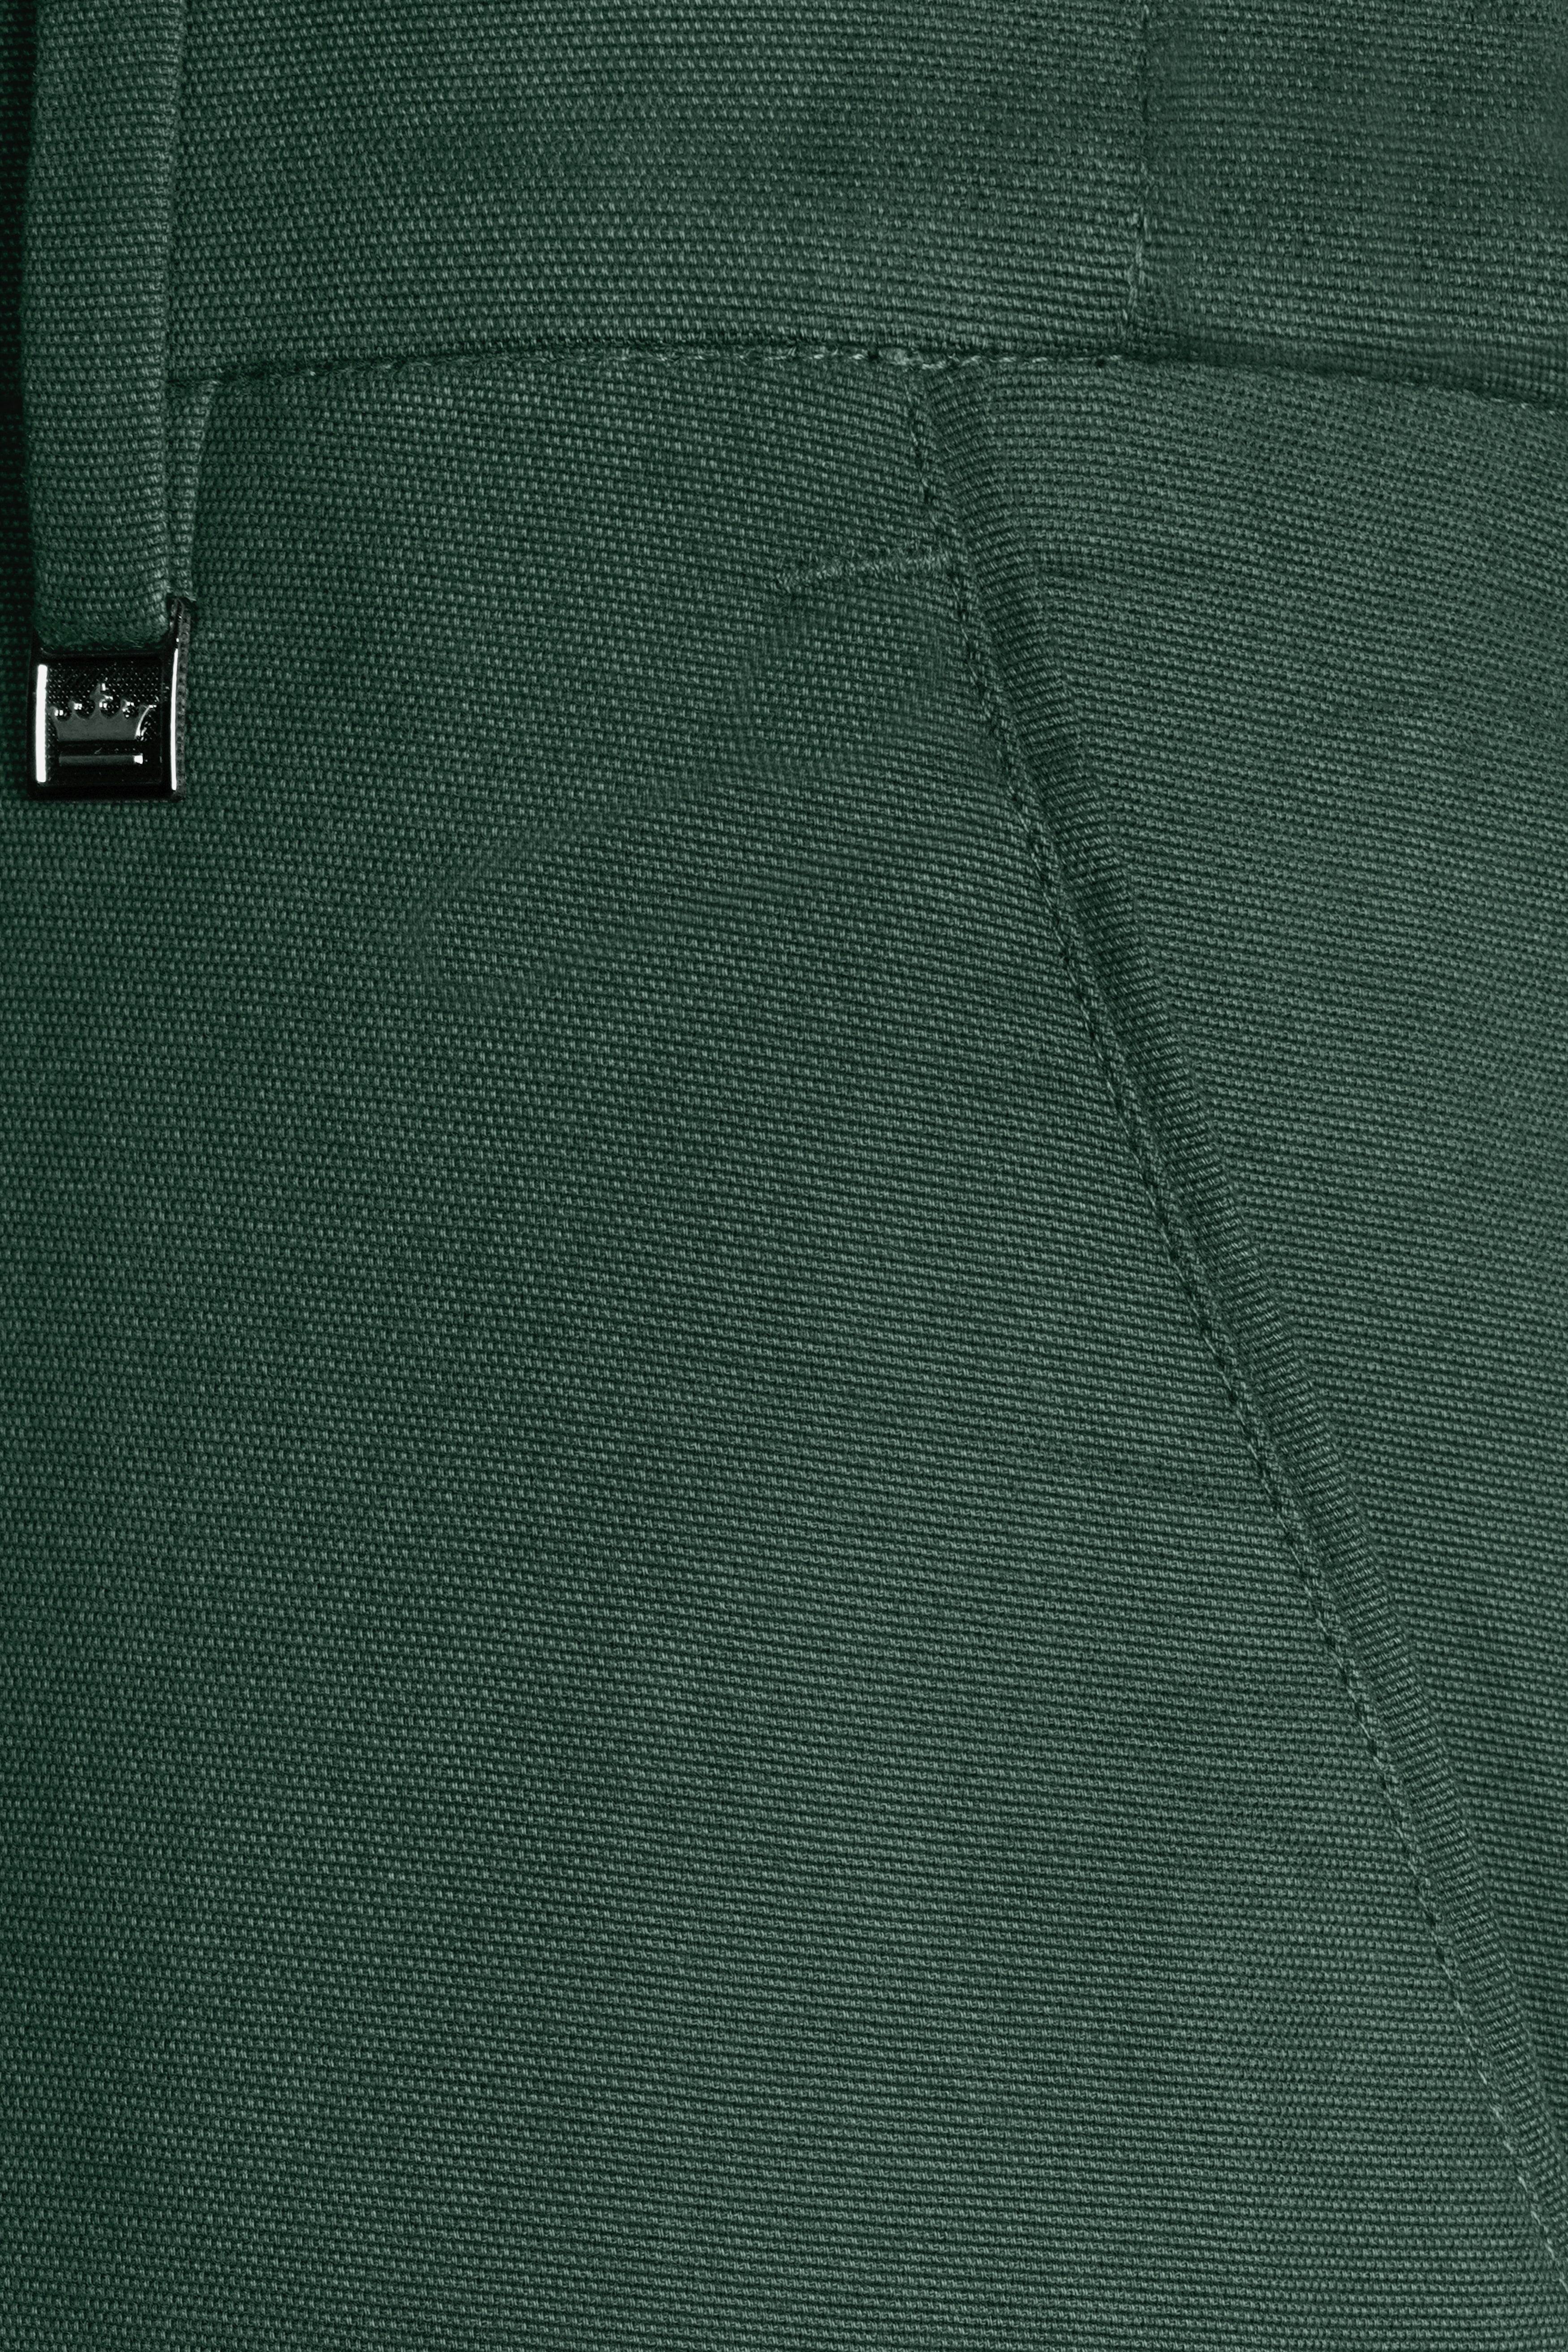 Fern Green Premium Cotton Pant T2970-28, T2970-30, T2970-32, T2970-34, T2970-36, T2970-38, T2970-40, T2970-42, T2970-44